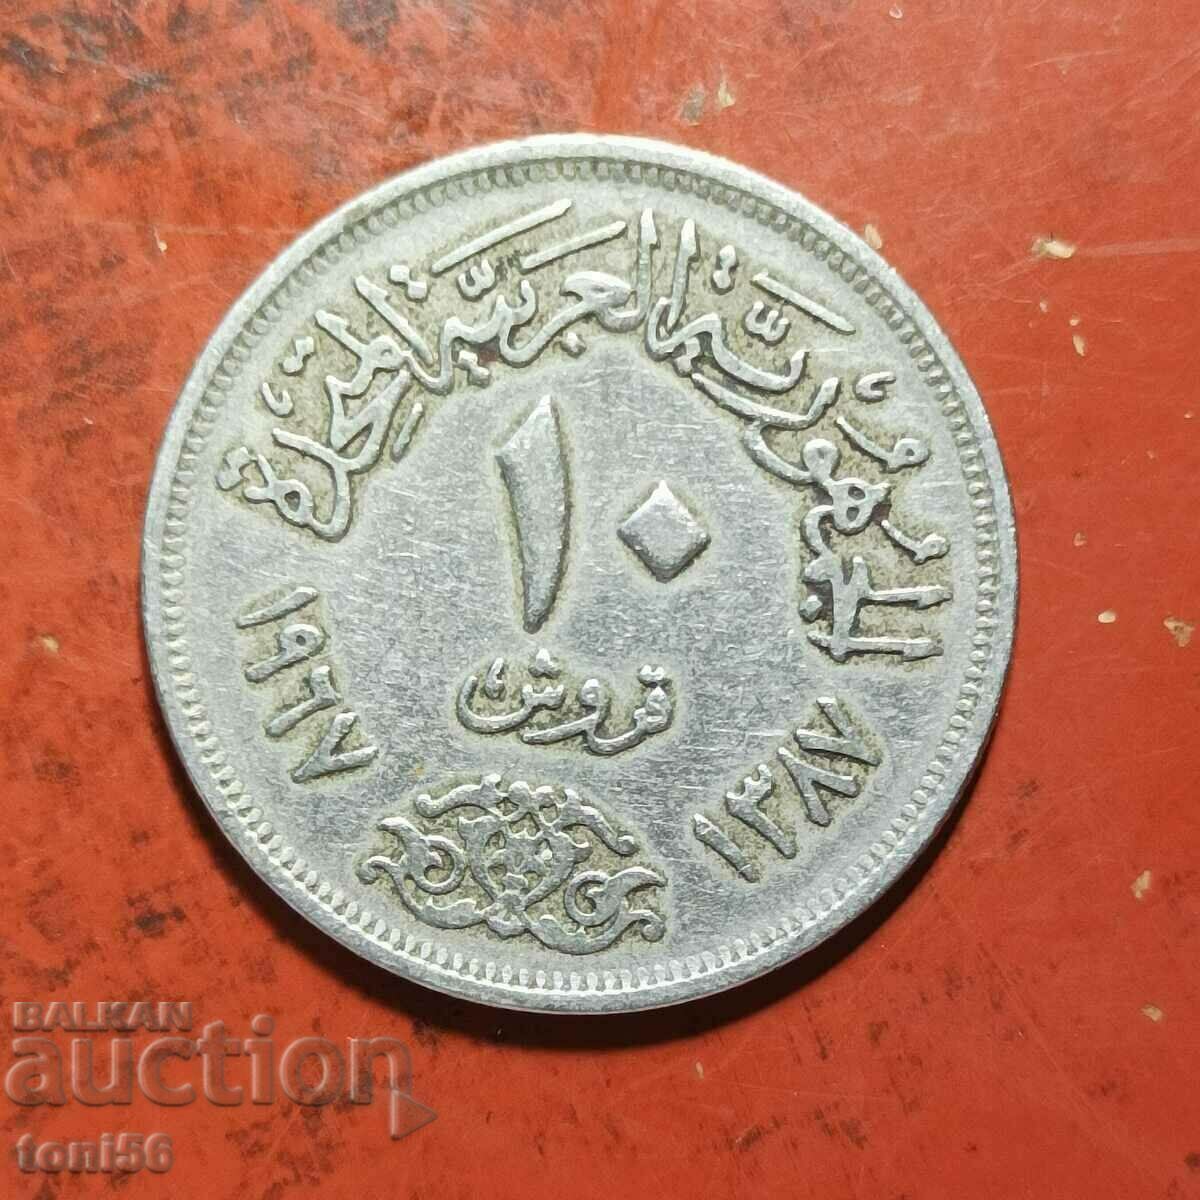 Egypt 10 piastres 1967